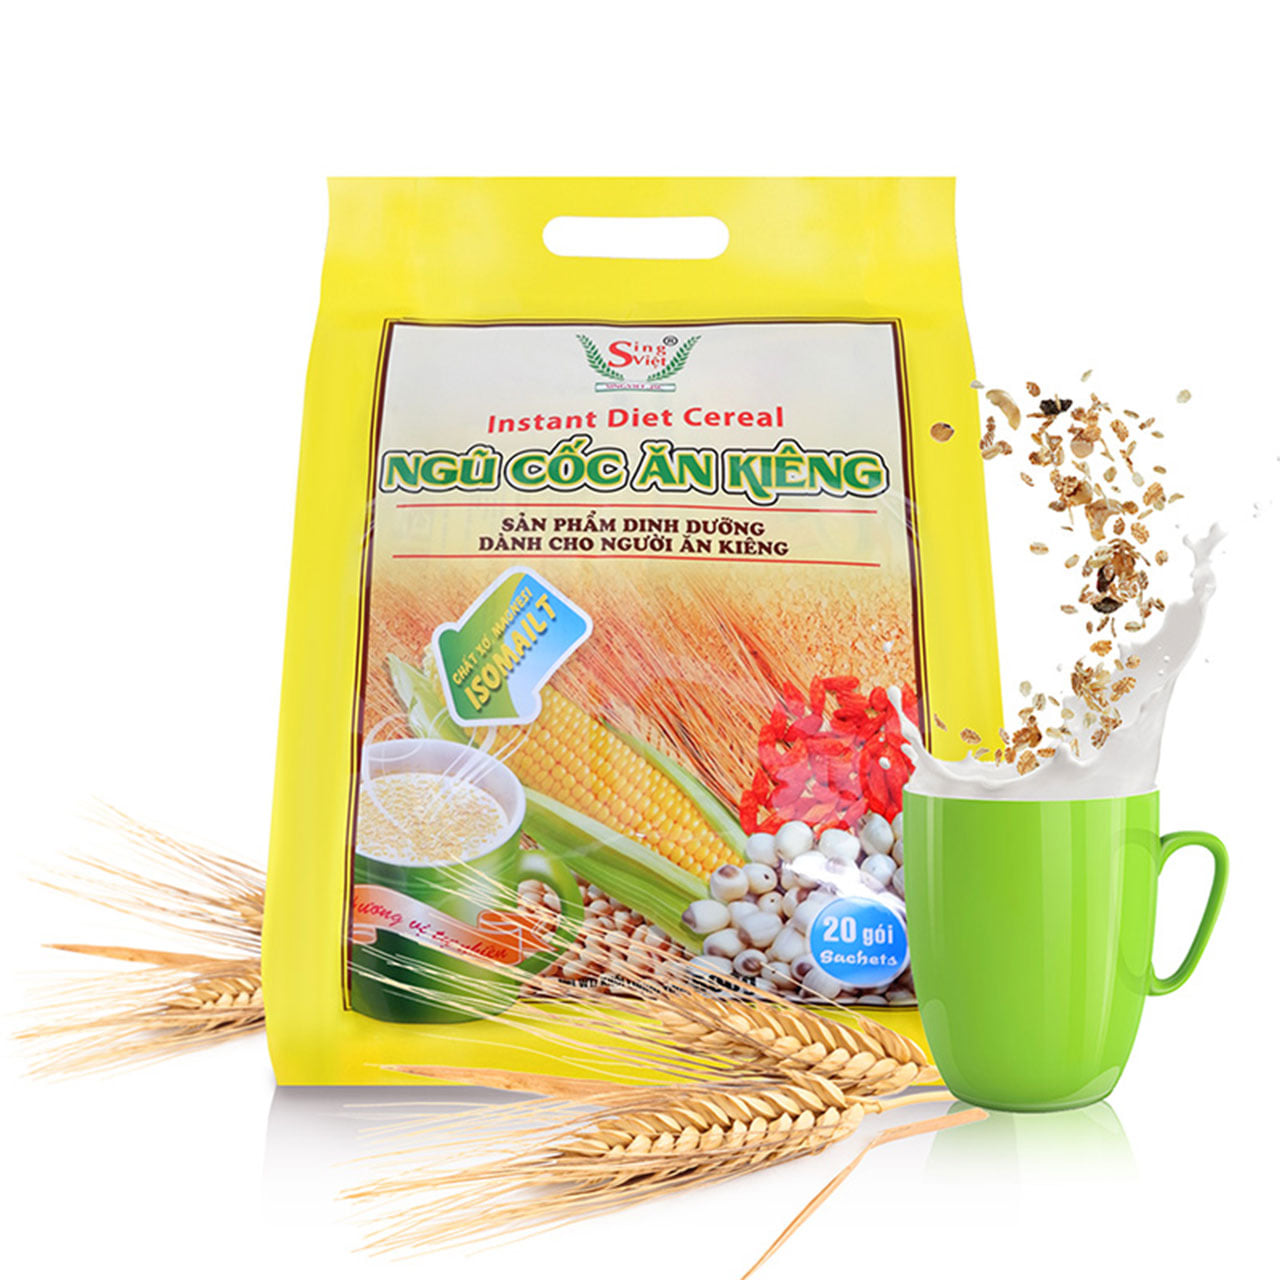 Ngũ cốc ăn kiêng 500g - Sing Việt